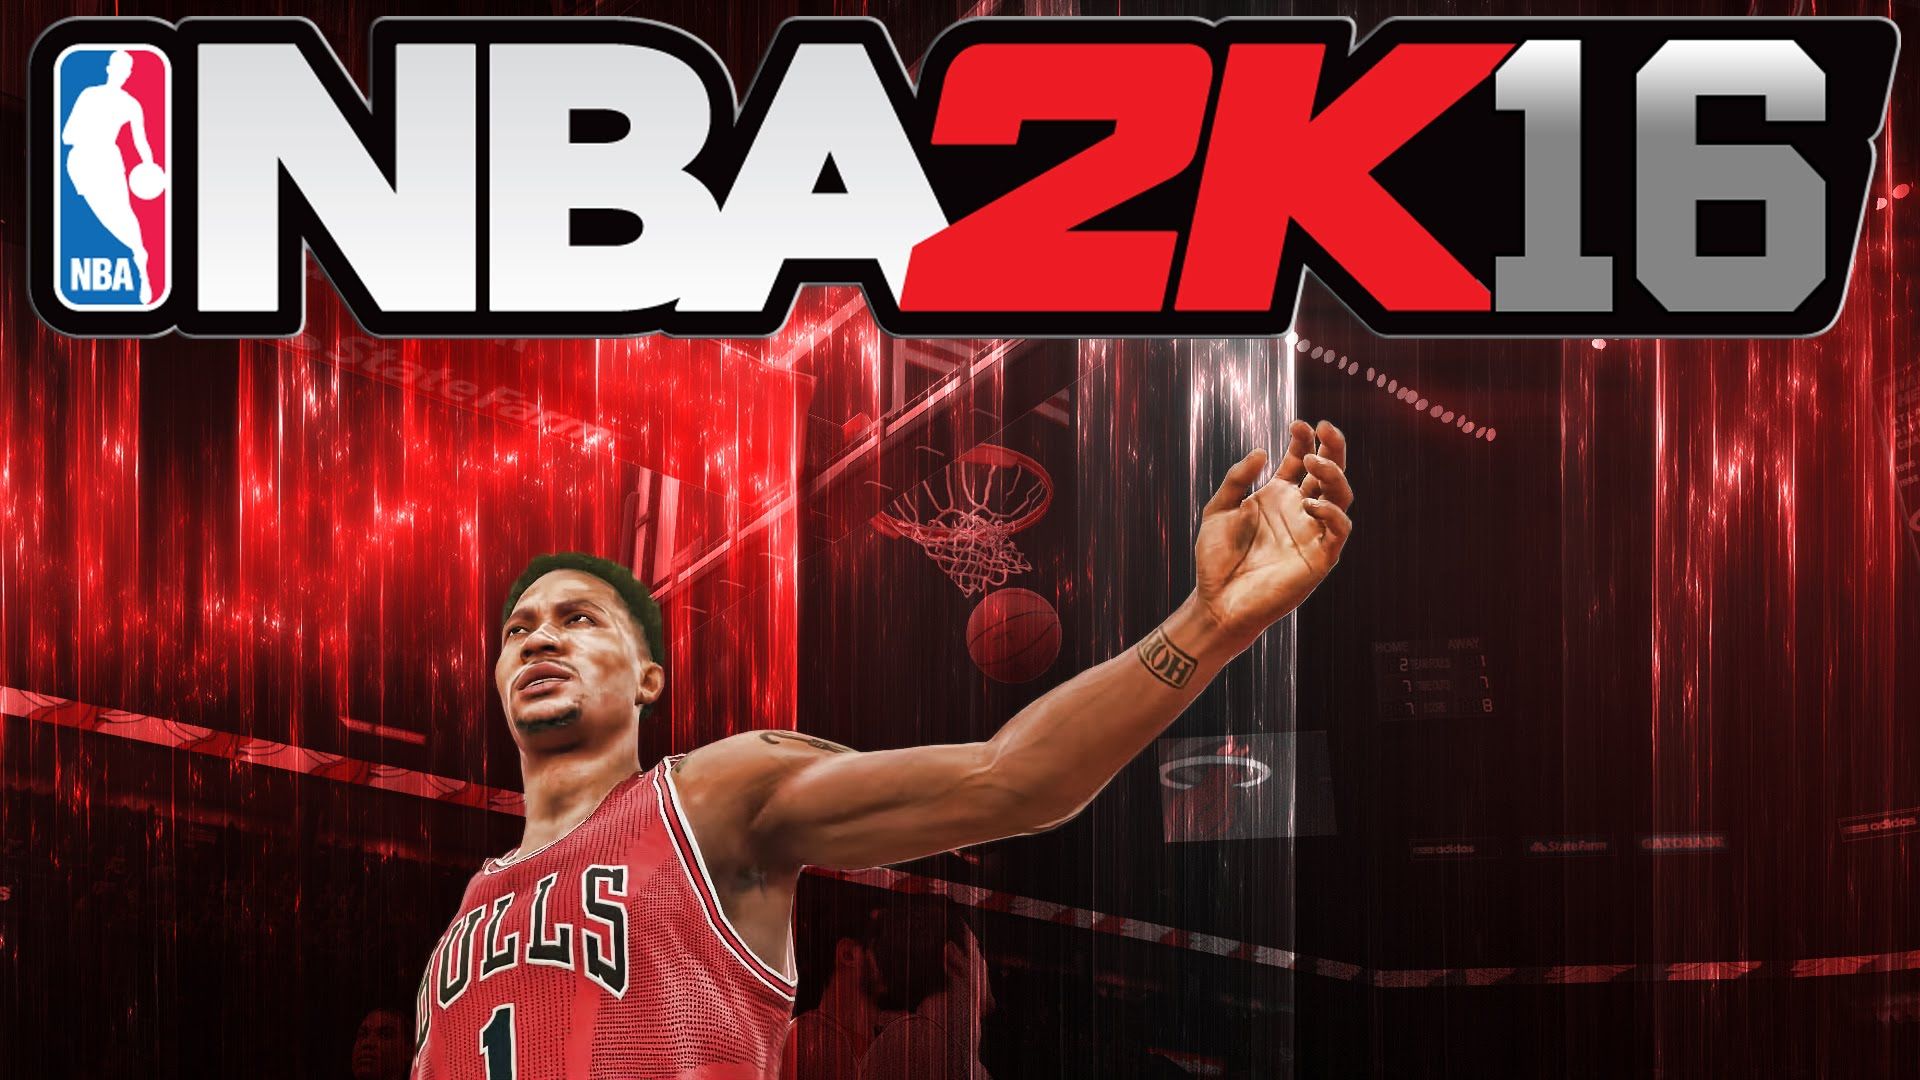 NBA 2K16 HD wallpaper free download